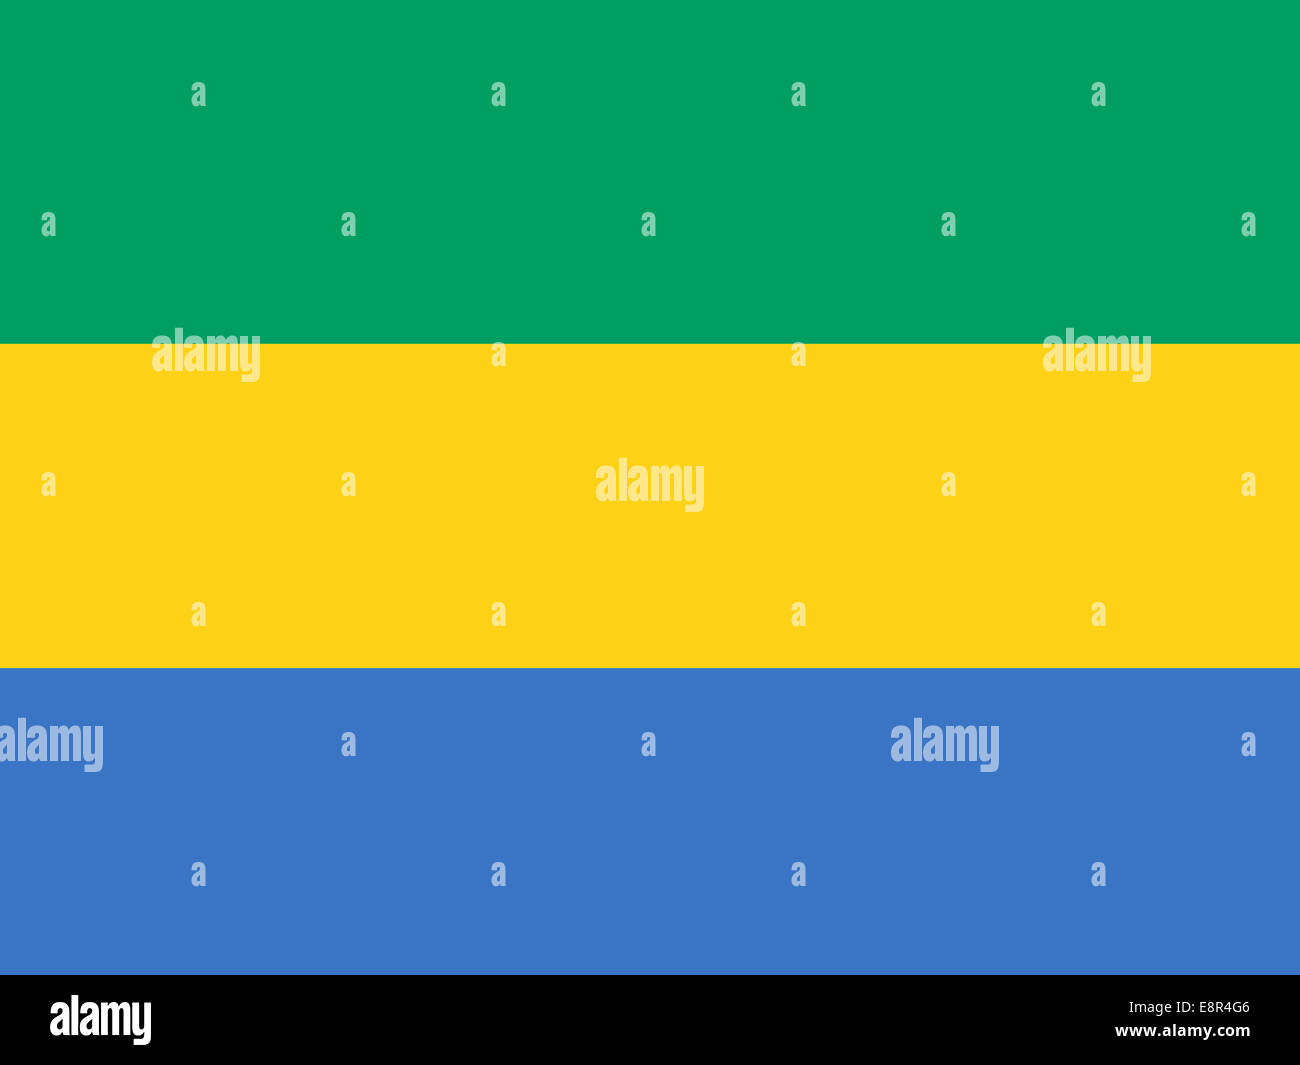 Flagge von Gabun - Standardverhältnis der Gabunischen Flagge - True RGB-Farbmodus Stockfoto